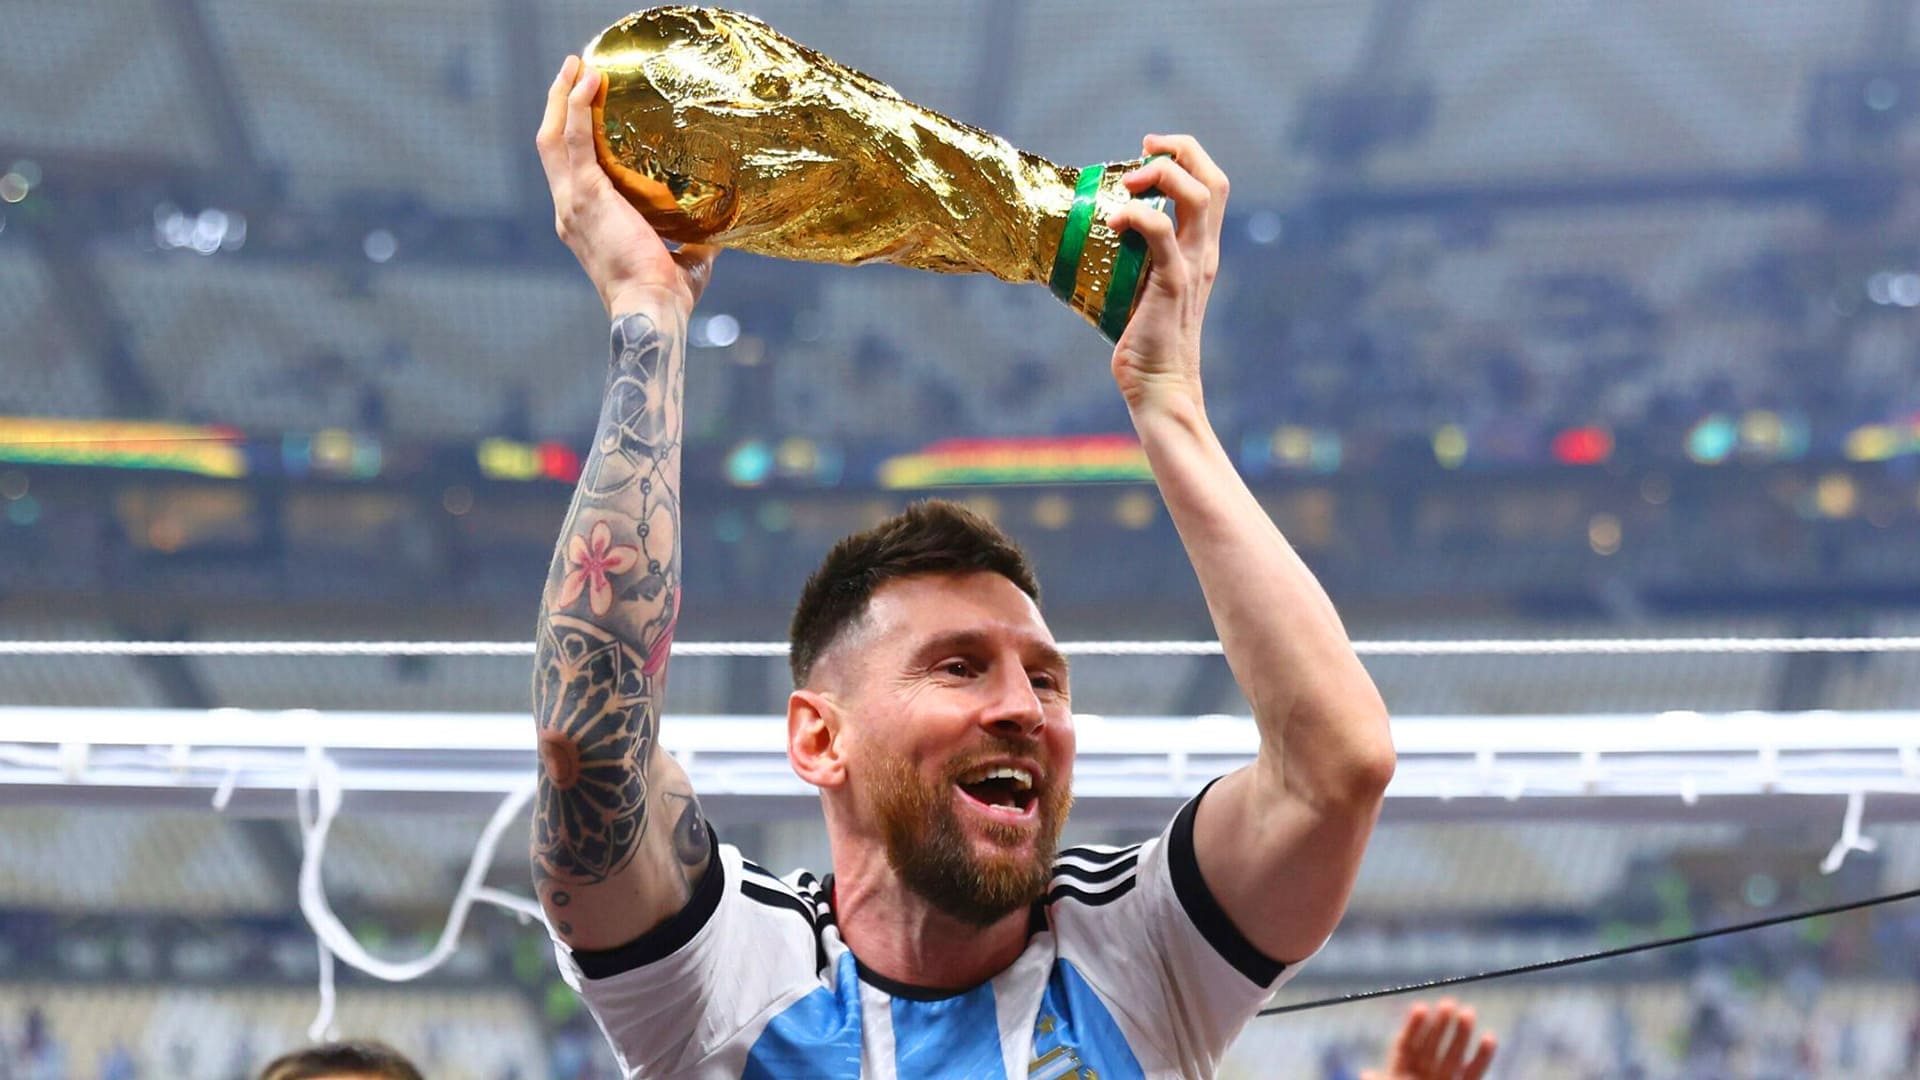 Hình nền Messi nâng cao chiếc cúp World Cup đầy phấn khích và tự hào. Bạn sẽ thấy được tất cả sự nỗ lực và đam mê của Messi trong suốt chiến dịch đấu trường World Cup đỉnh cao. Bộ hình nền này chắc chắn sẽ khiến fan Messi không thể rời mắt.